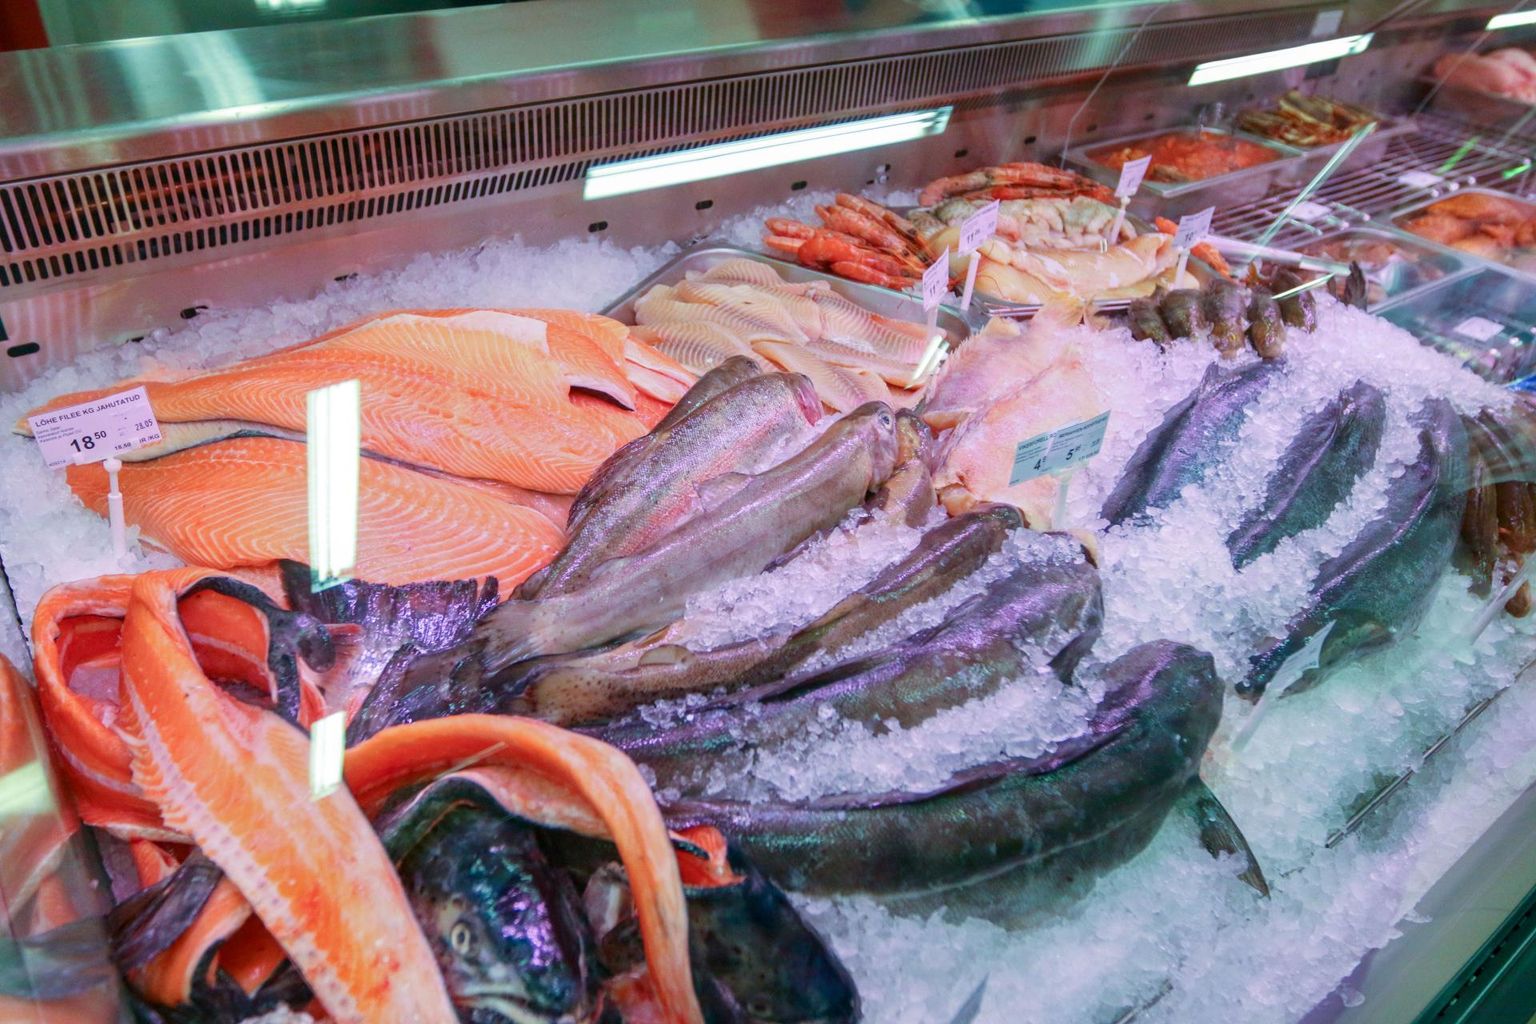 Eesti tarbija on ettevaatlikumaks muutunud just toore kala suhtes.